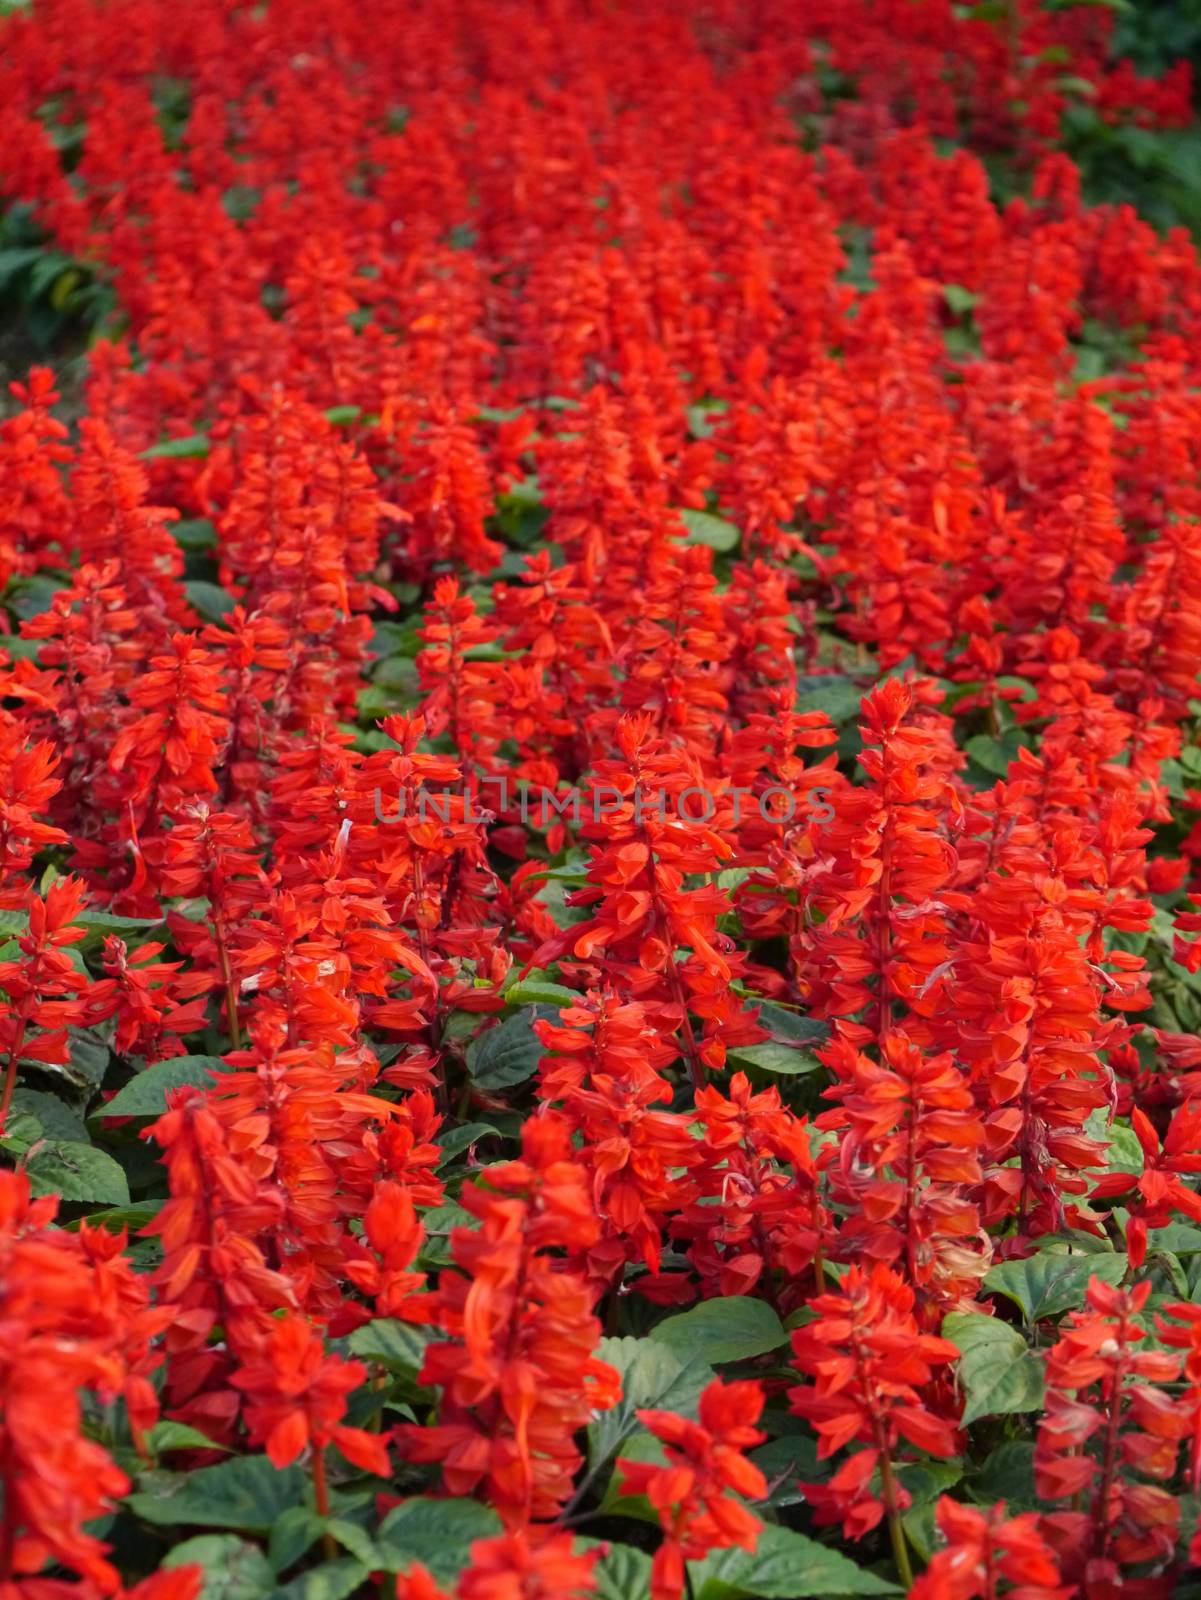 red flower in the garden by Noppharat_th